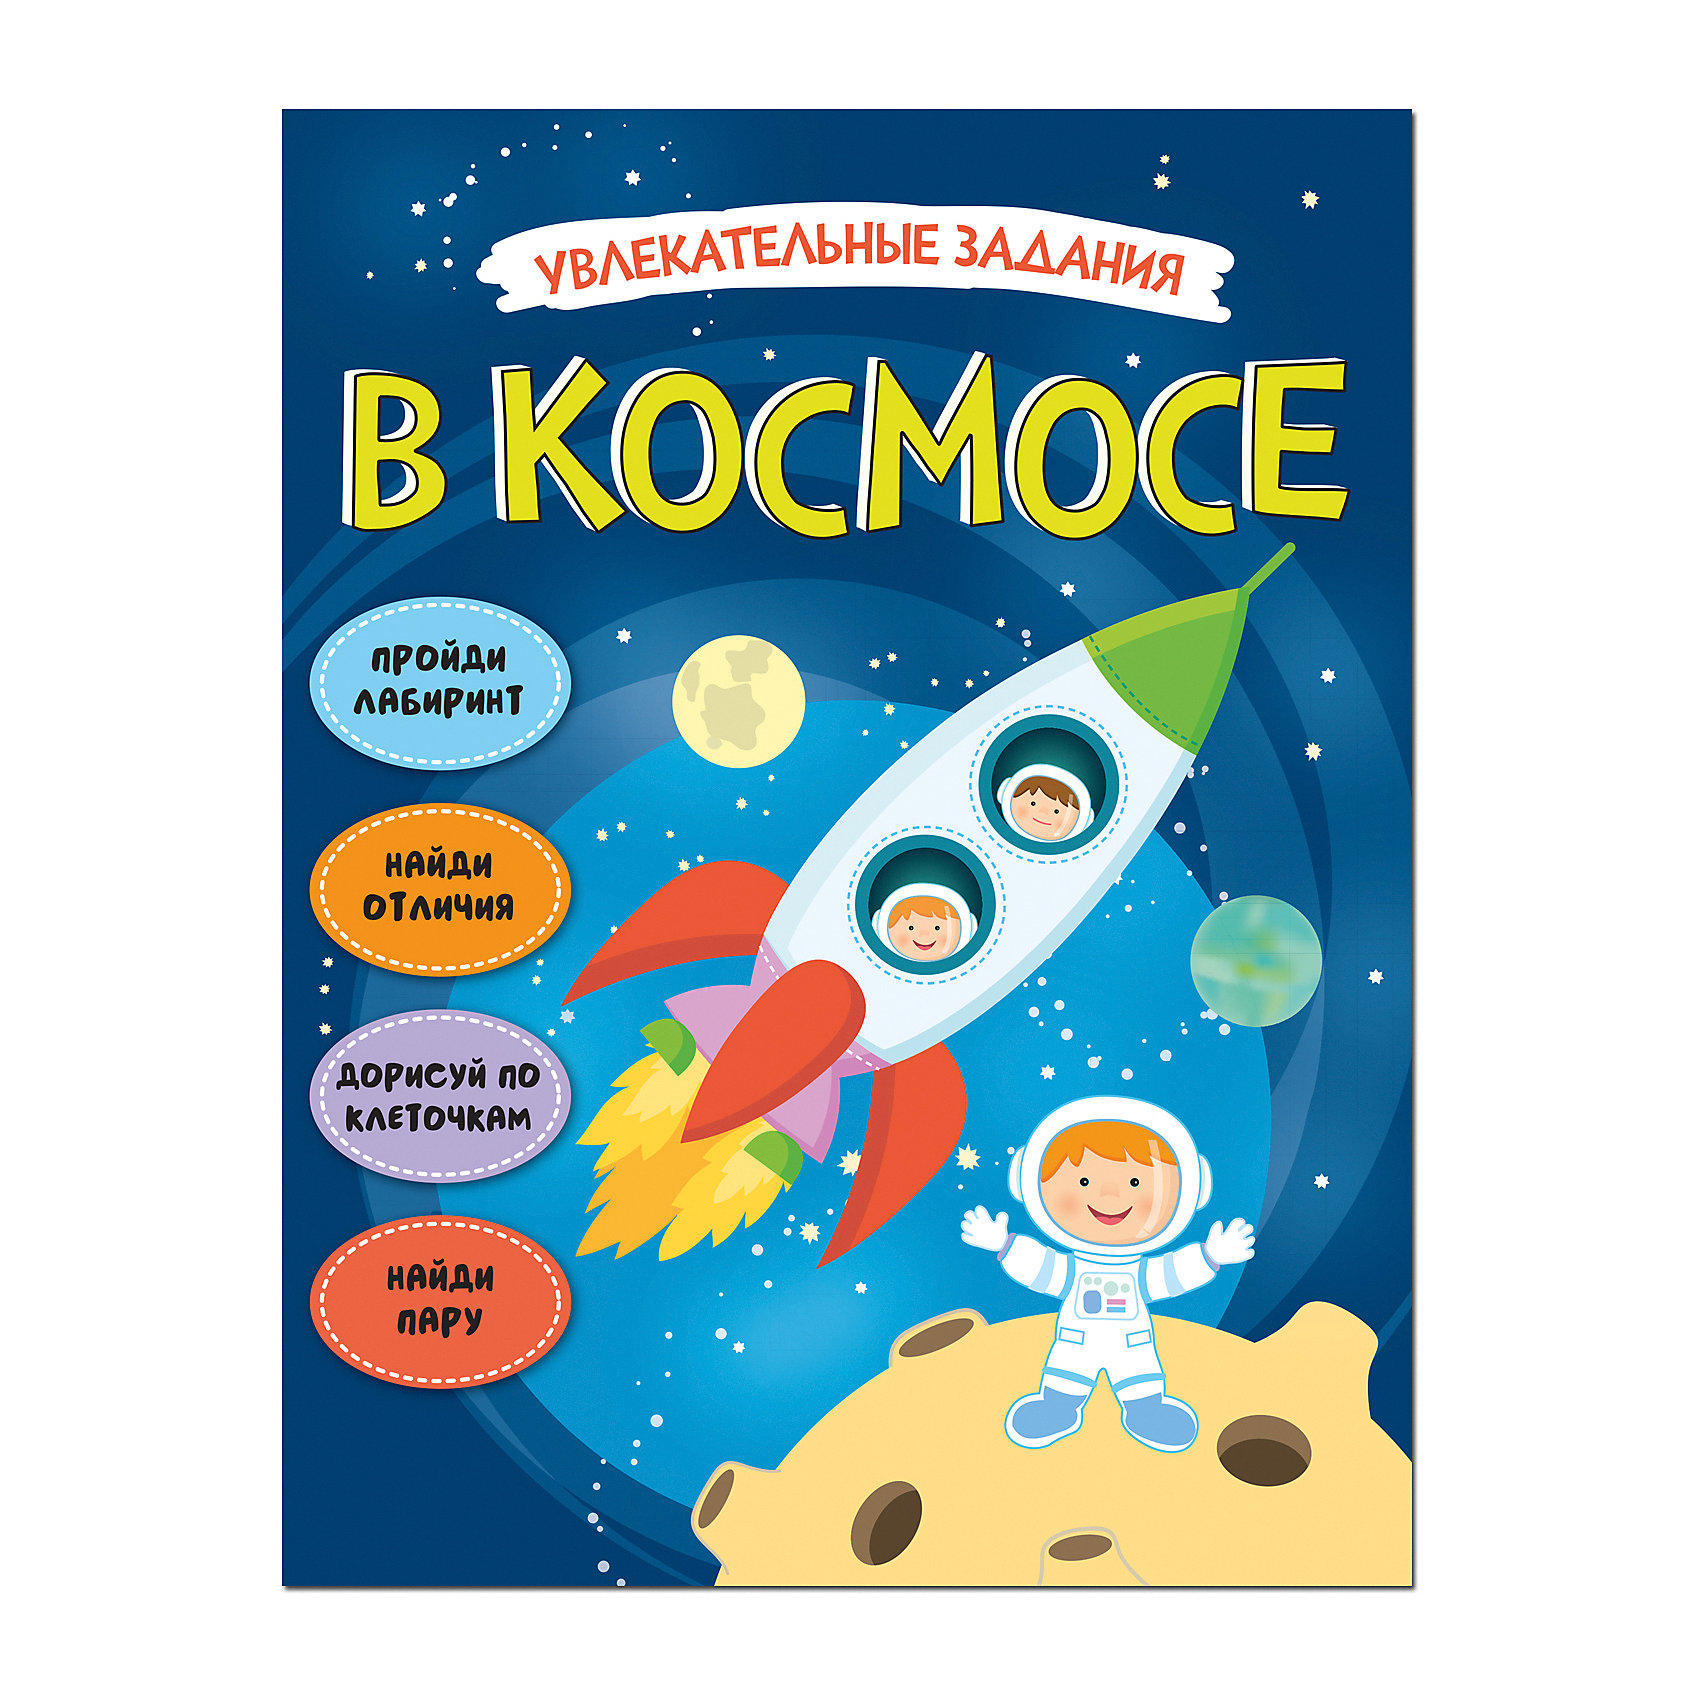 Читаем про космос детям 6 лет. Детские книжки про космос. Космос для дошкольников. Книги о космосе для детей. Косомсдля дошкольников.